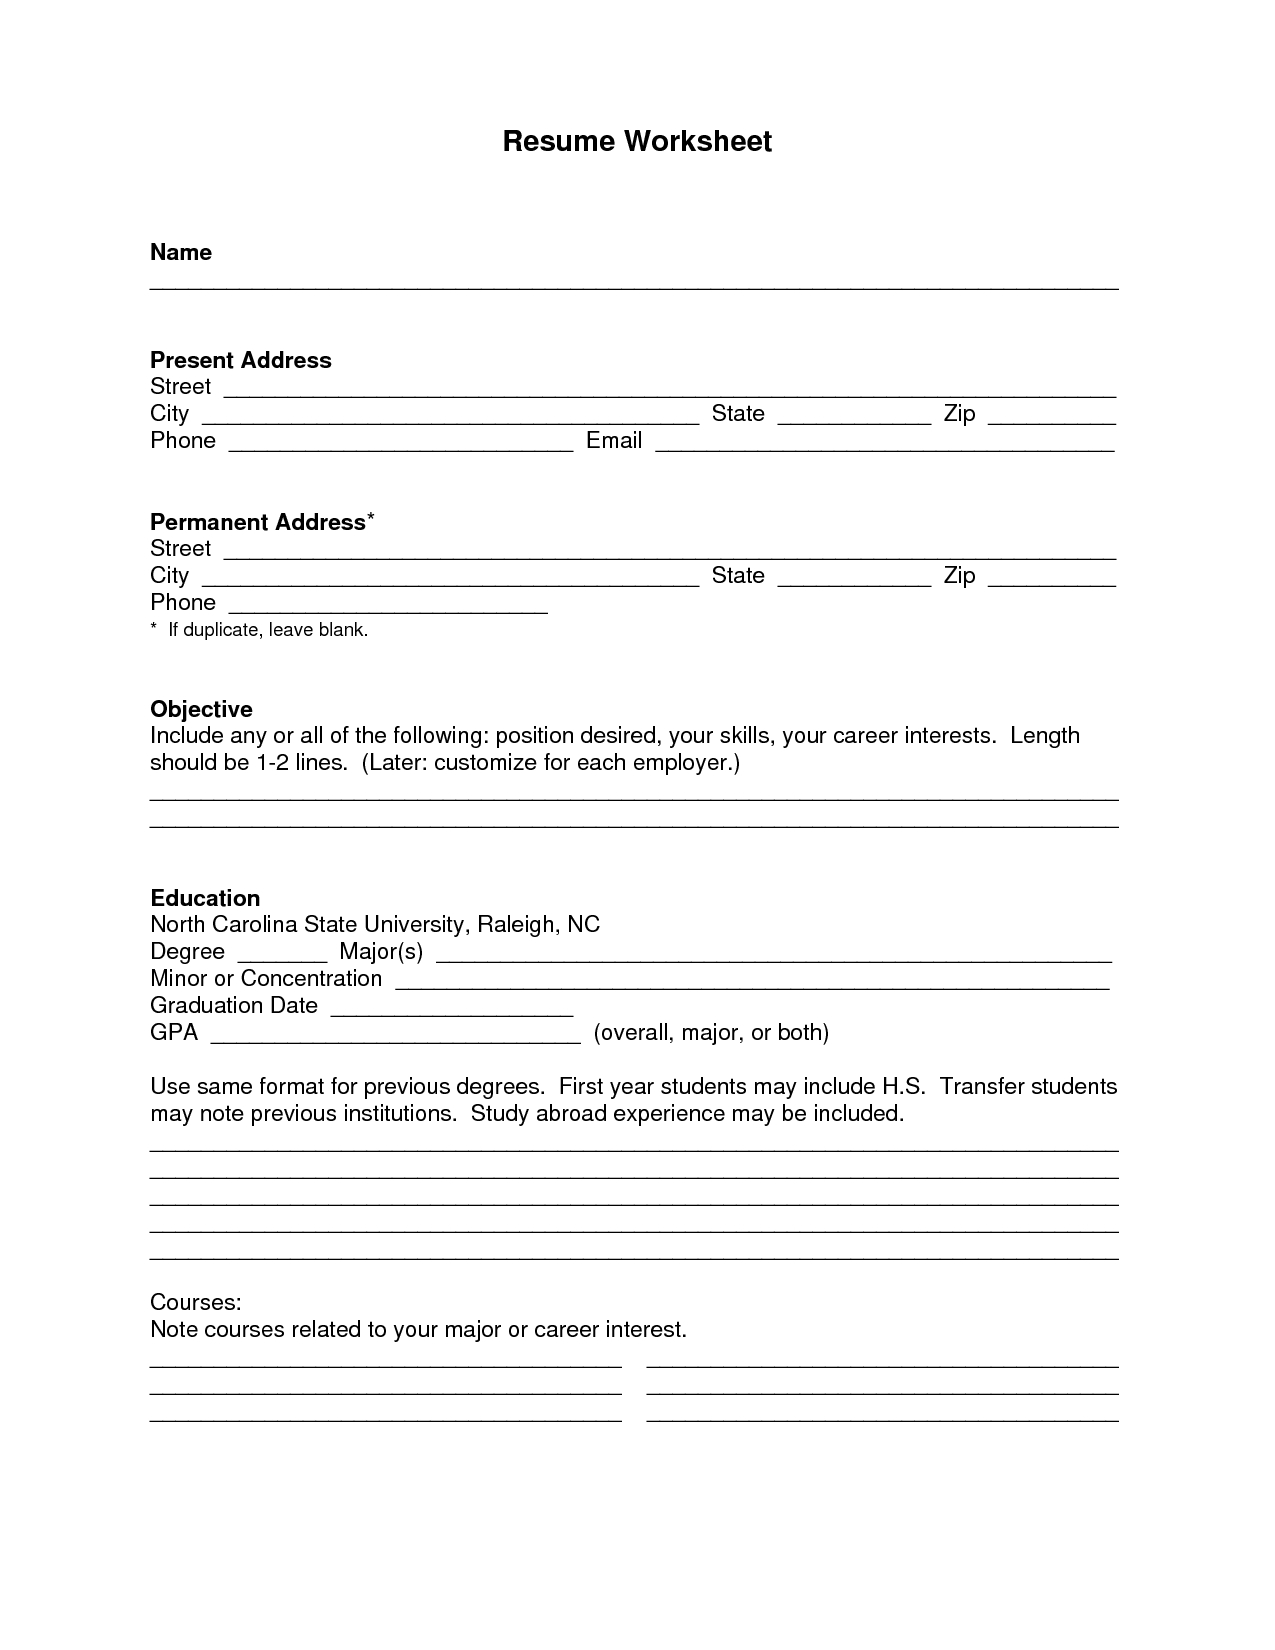 Blank Resume Template Pdf | Blank Resume Templatemmmmmmmmmmmm - Free Blank Resume Forms Printable